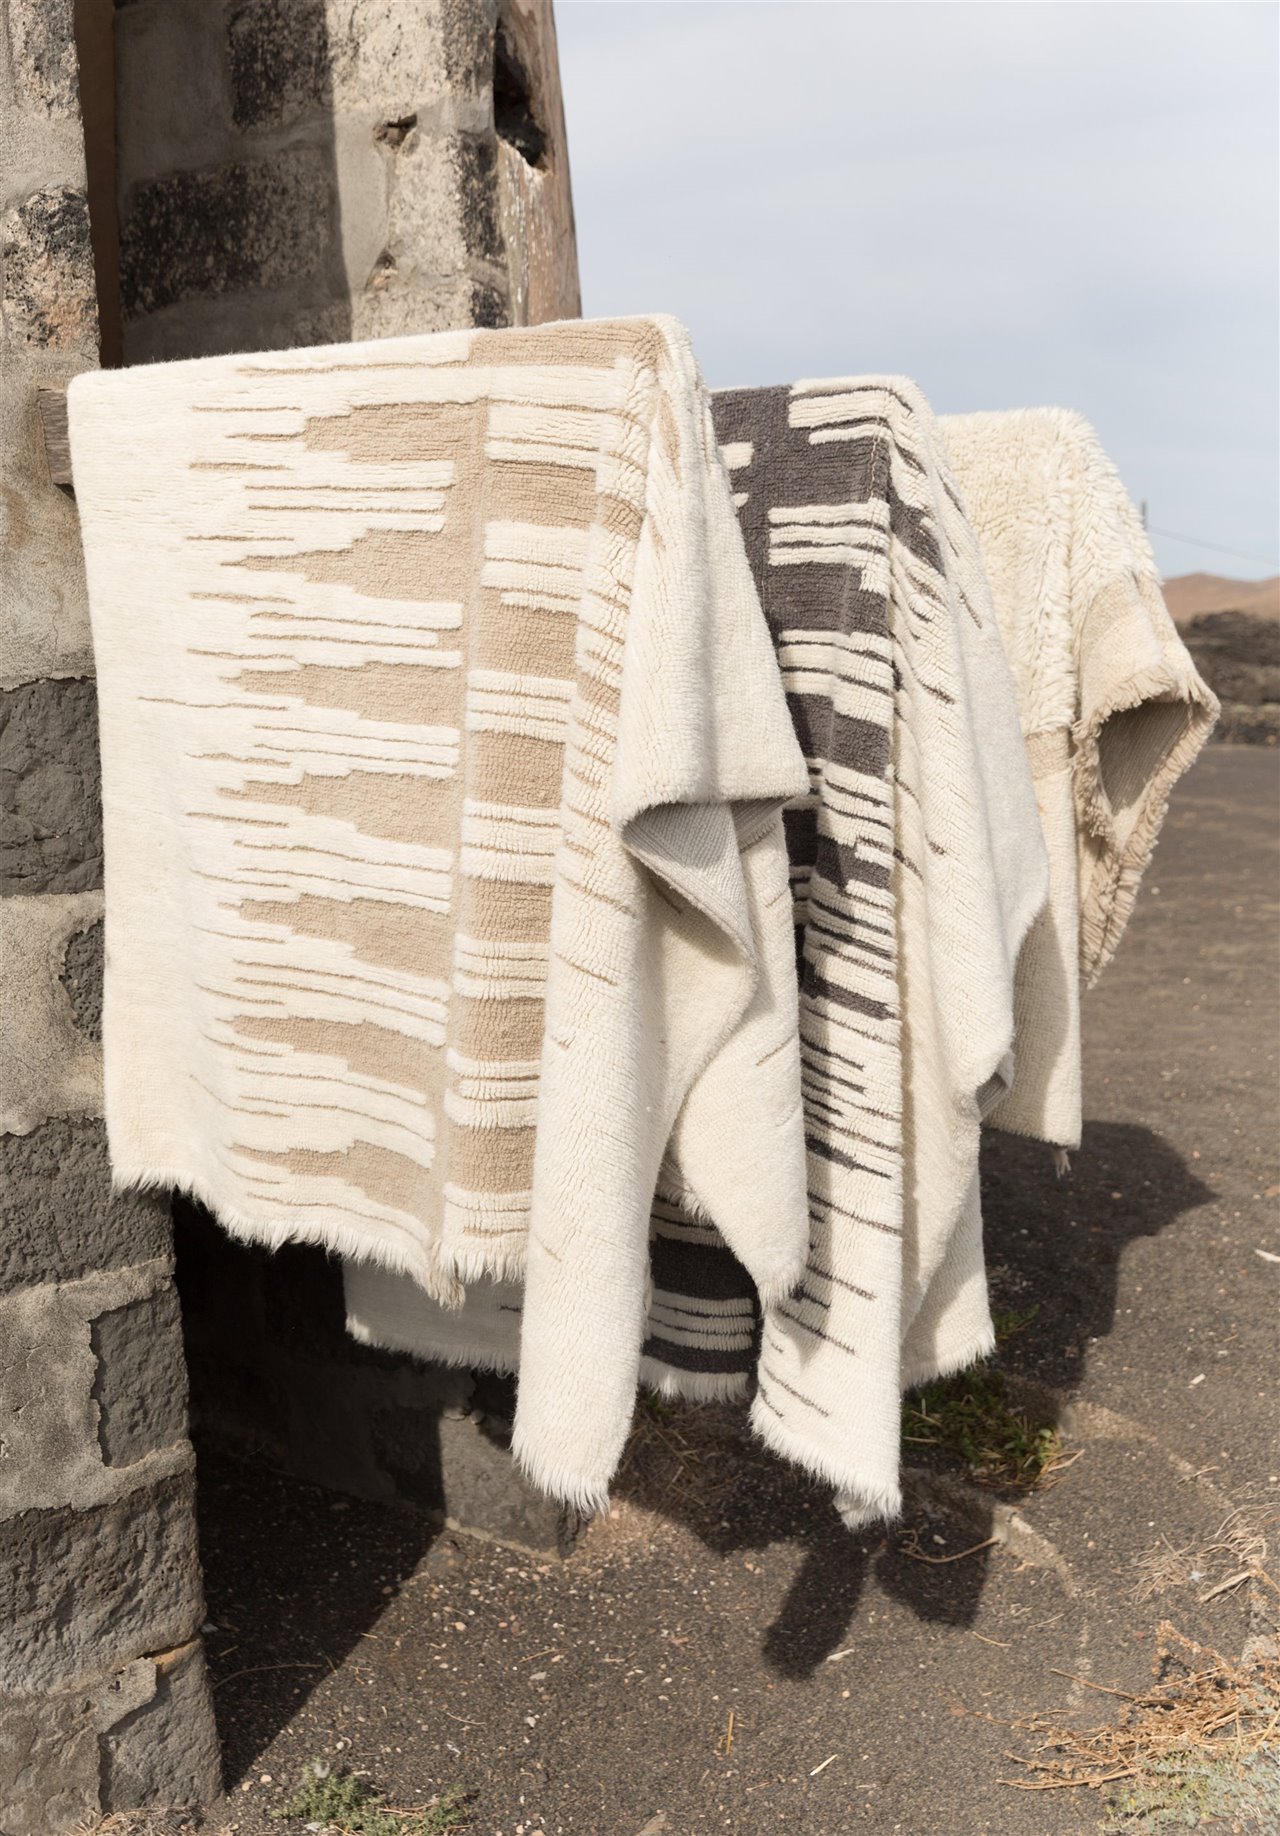  Estas alfombras de lana están inspiradas en una foto de una boda nómada que tuvo lugar en Zagros, la tierra de los Lors, en la que los hombres desfilaron con capas hechas con alfombras cosidas entre sí.